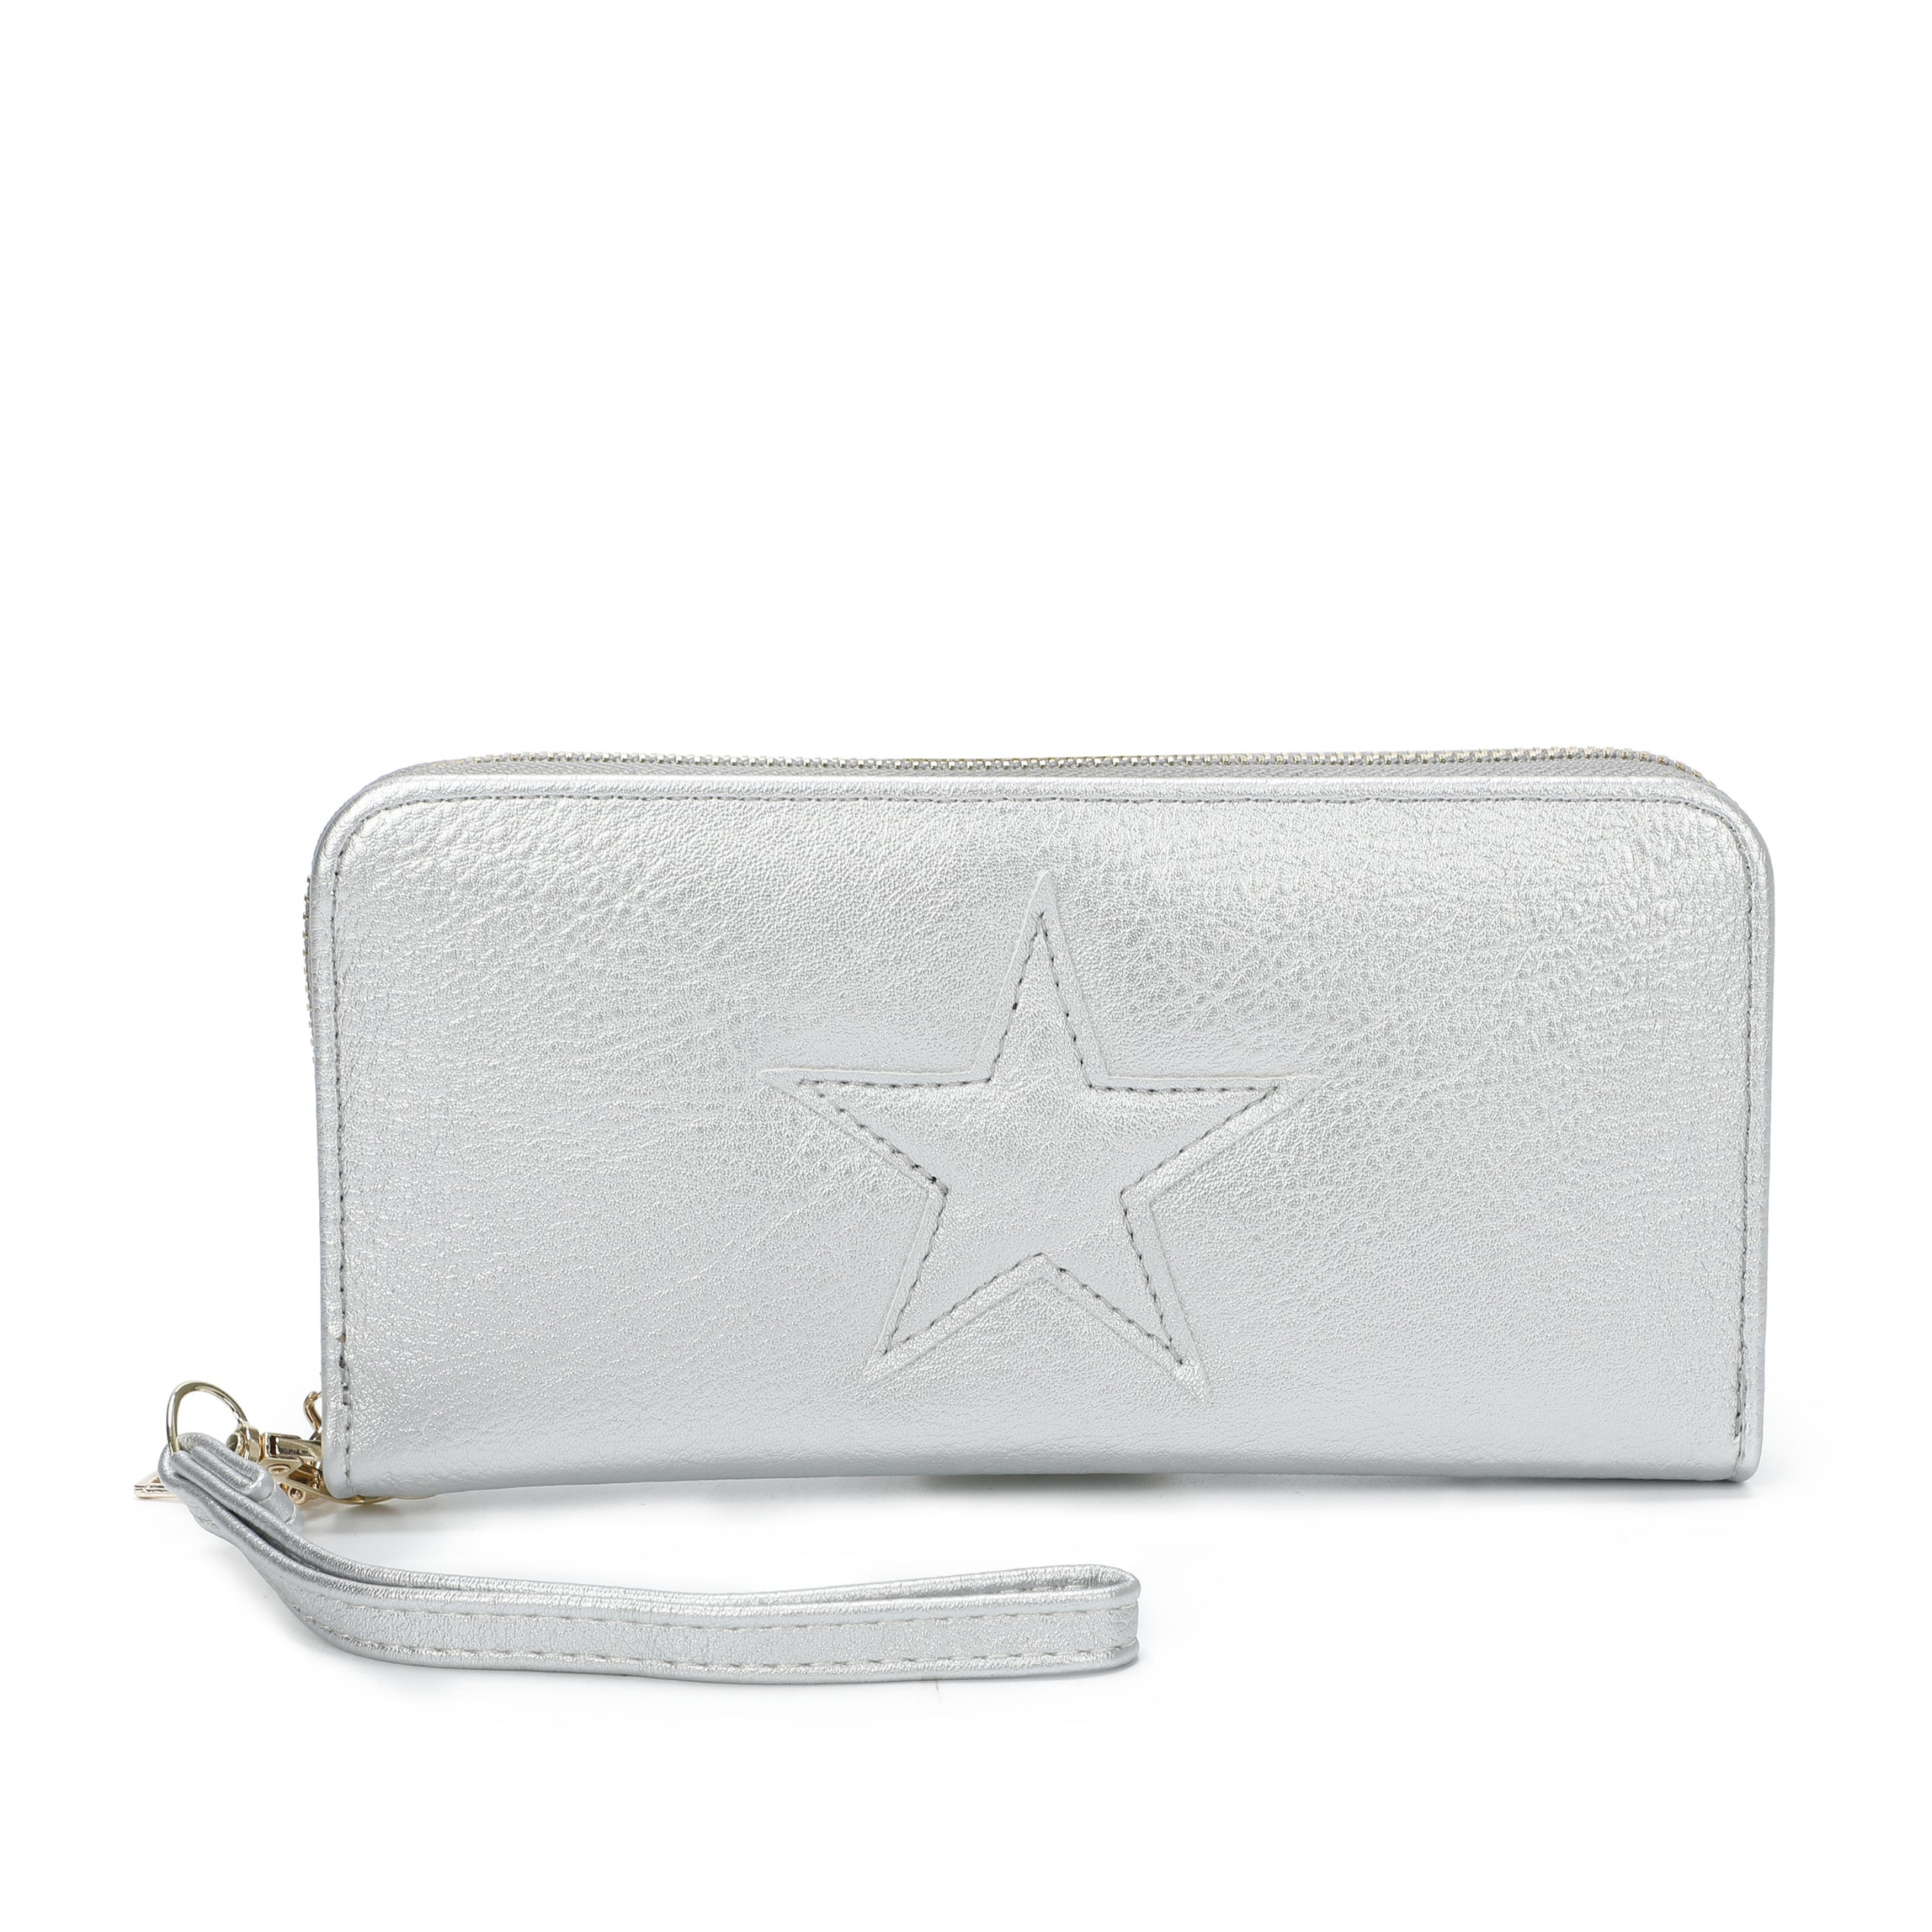 ABH Star purse